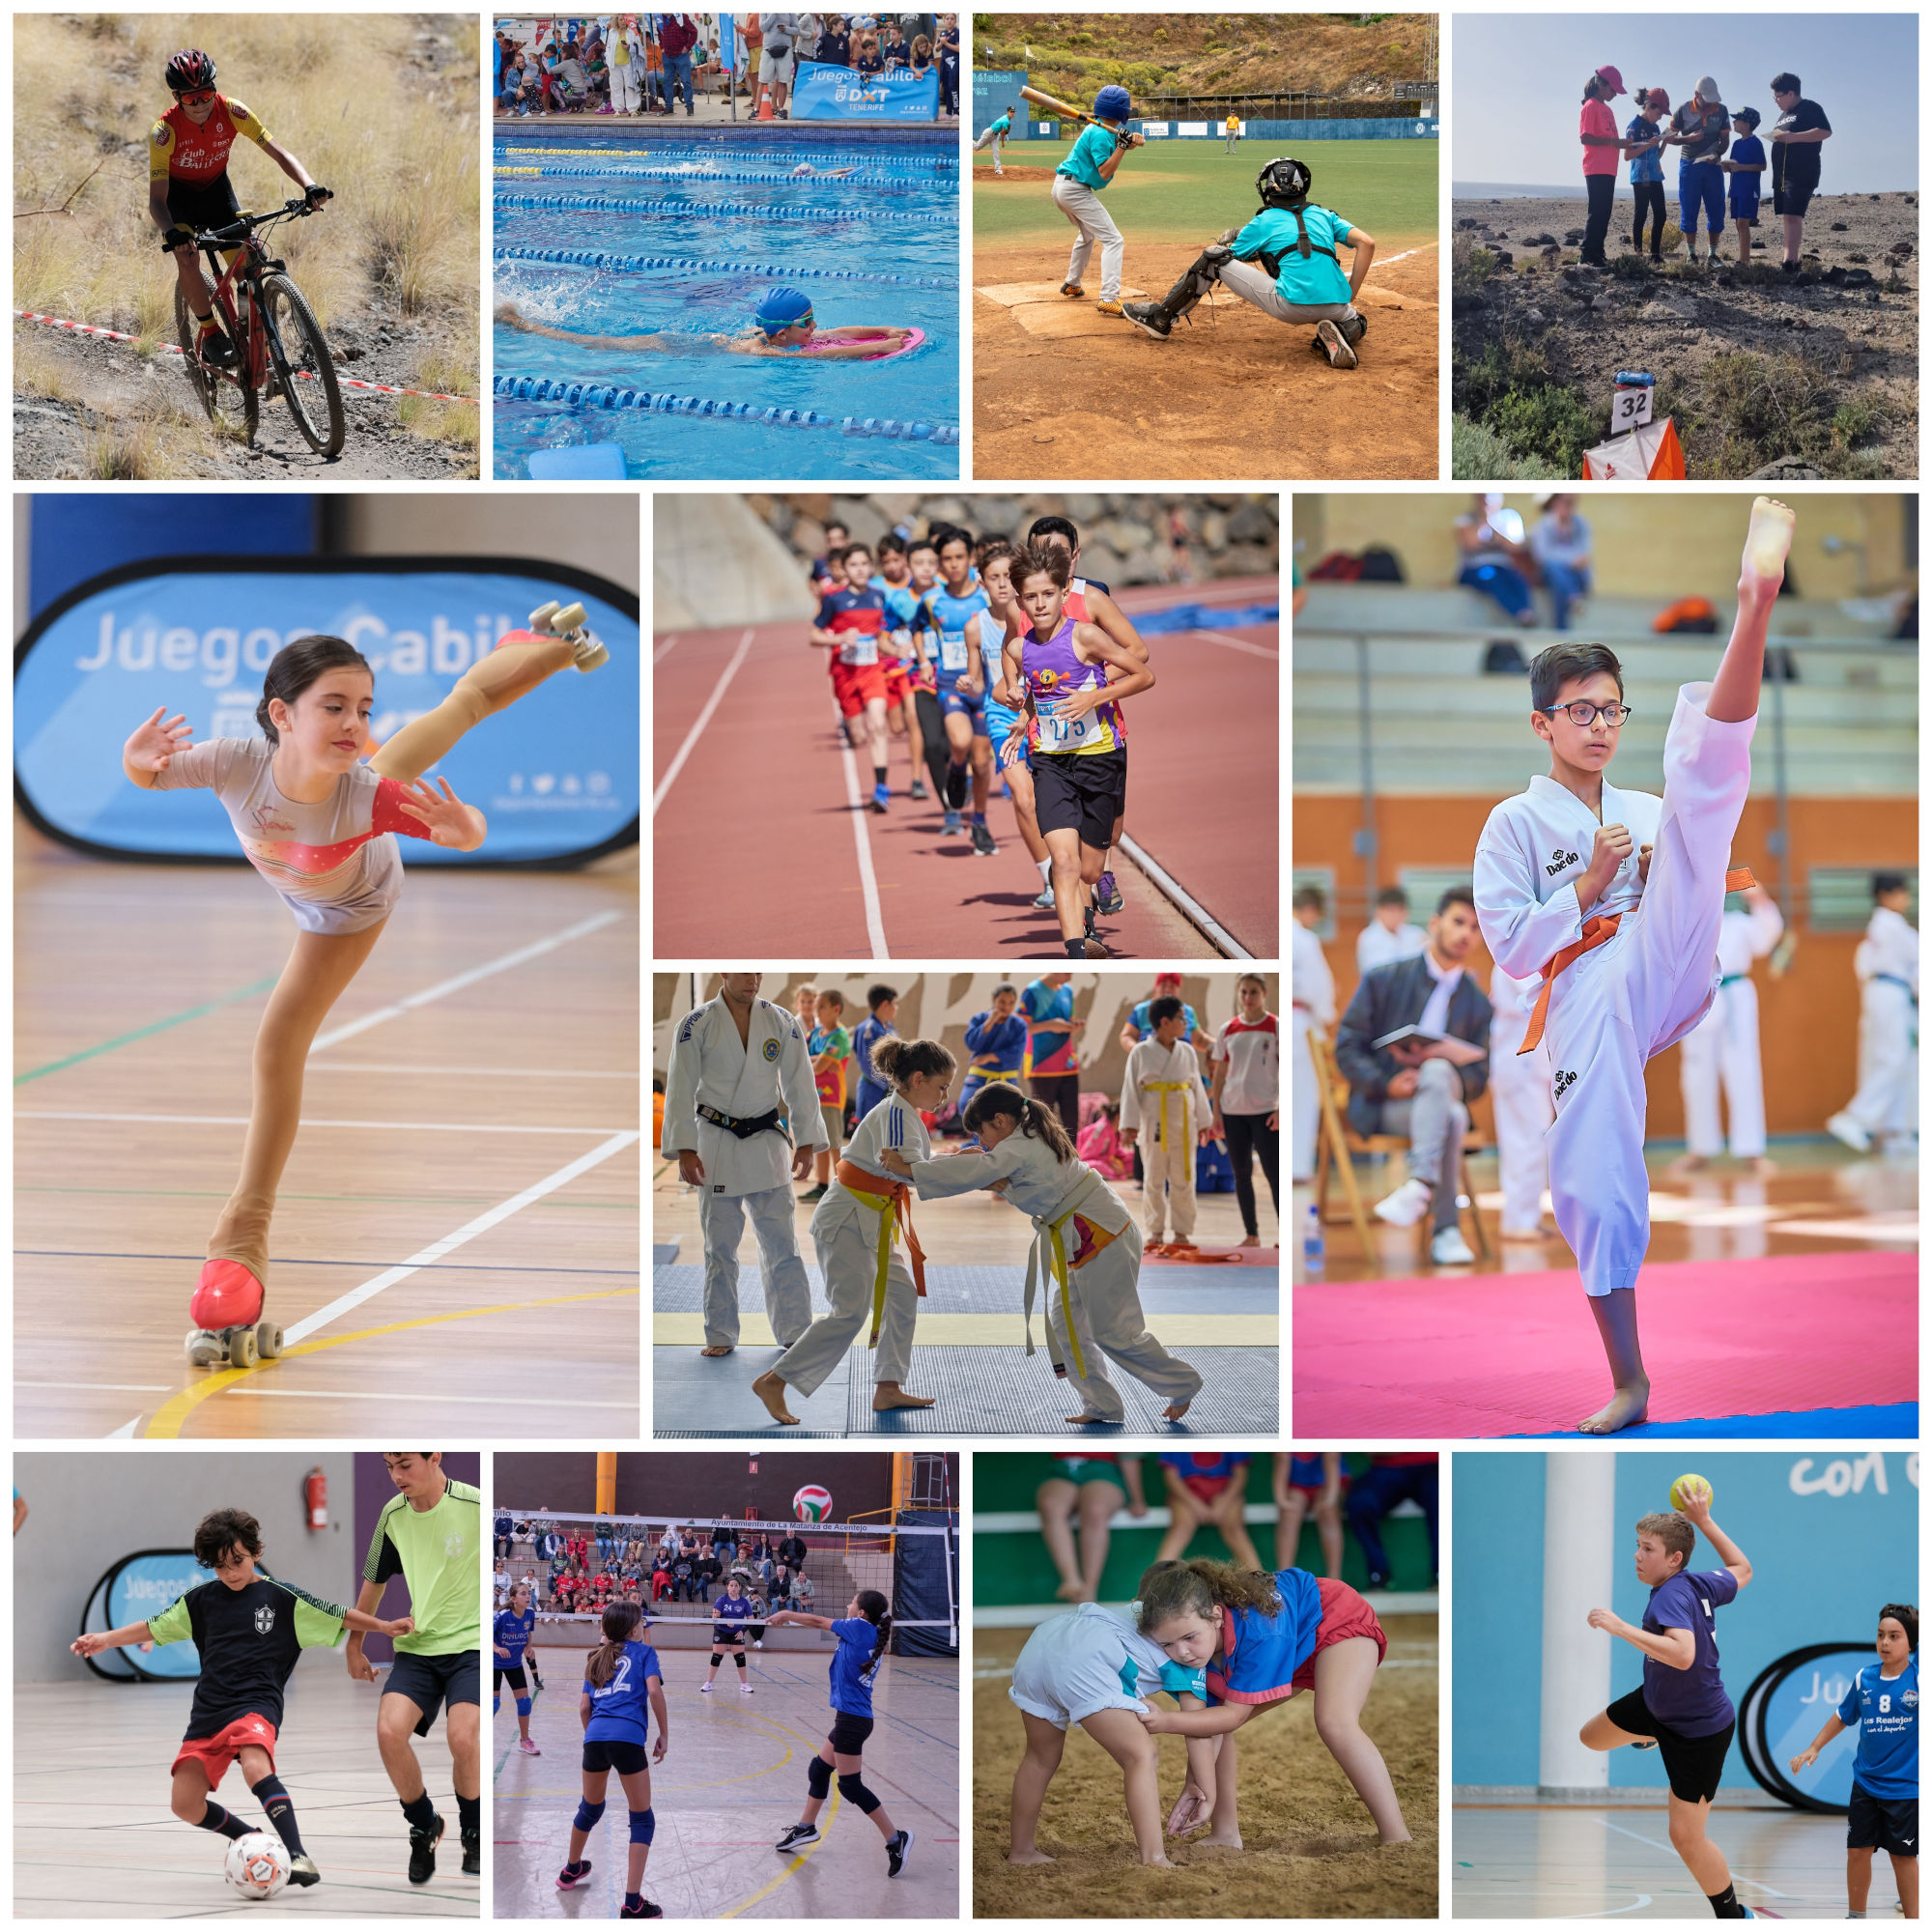 Más de 2000 jóvenes deportistas participarán este fin de semana en los Juegos Cabildo